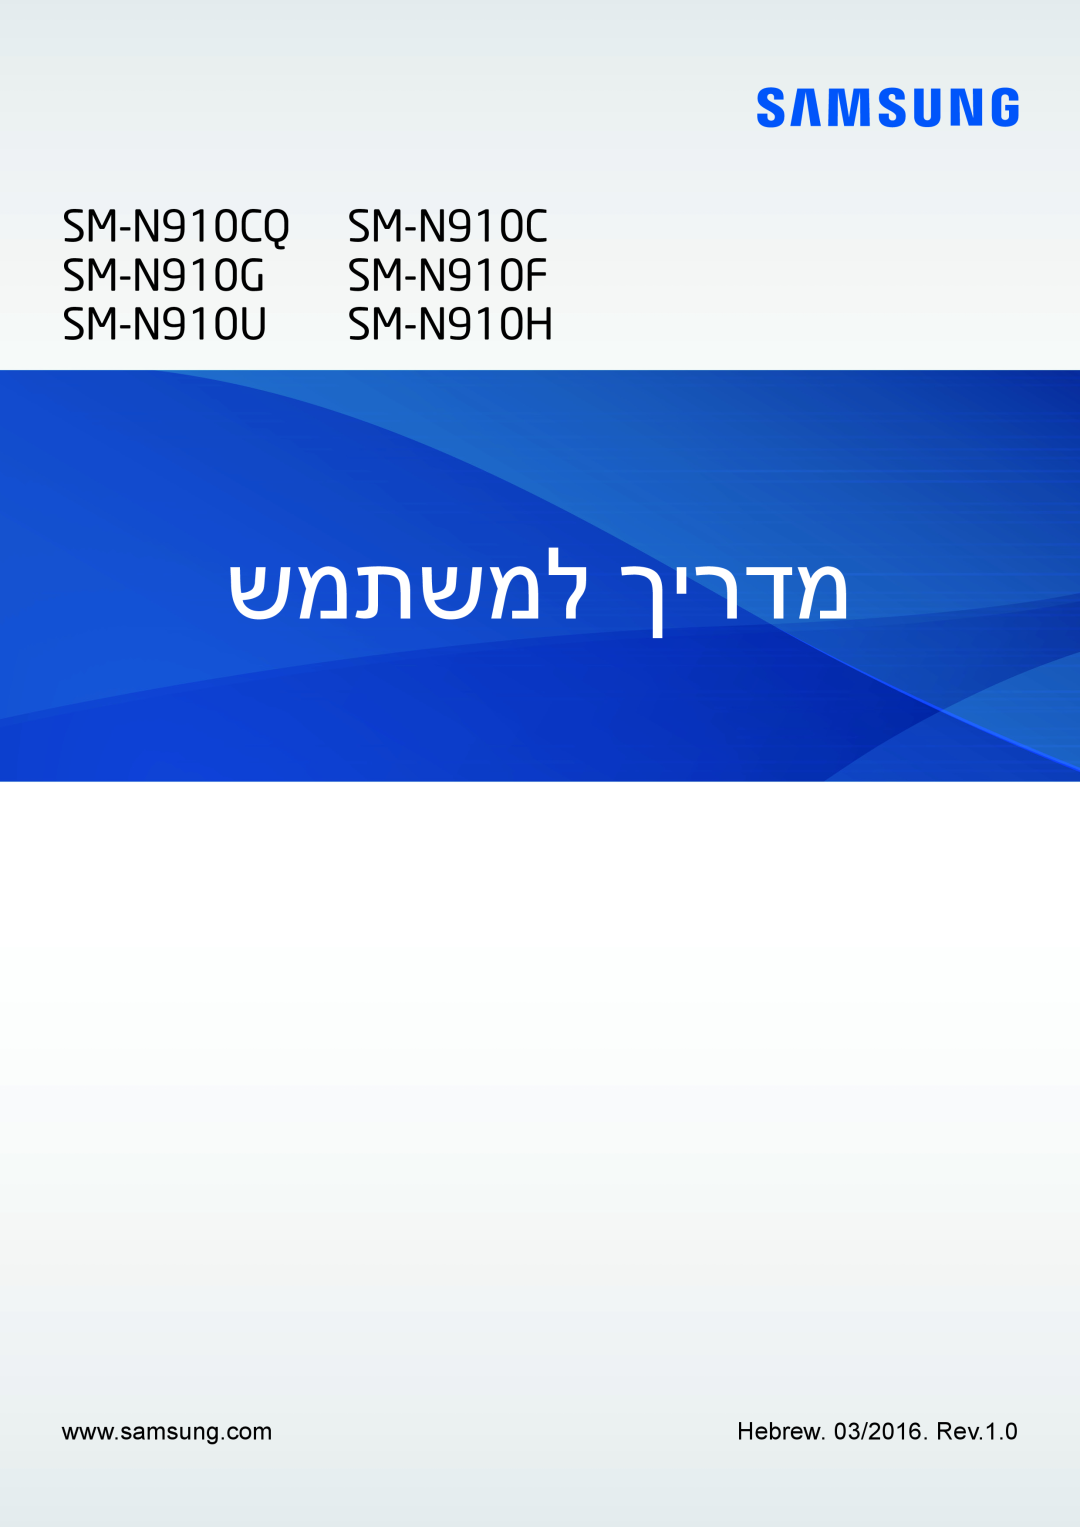 Samsung SM-N910FZWEDRE, SM-N910FZWEEUR, SM-N910FZWECOS, SM-N910FZKESFR manual Benutzerhandbuch, SM-N910C SM-N910F SM-N910H 